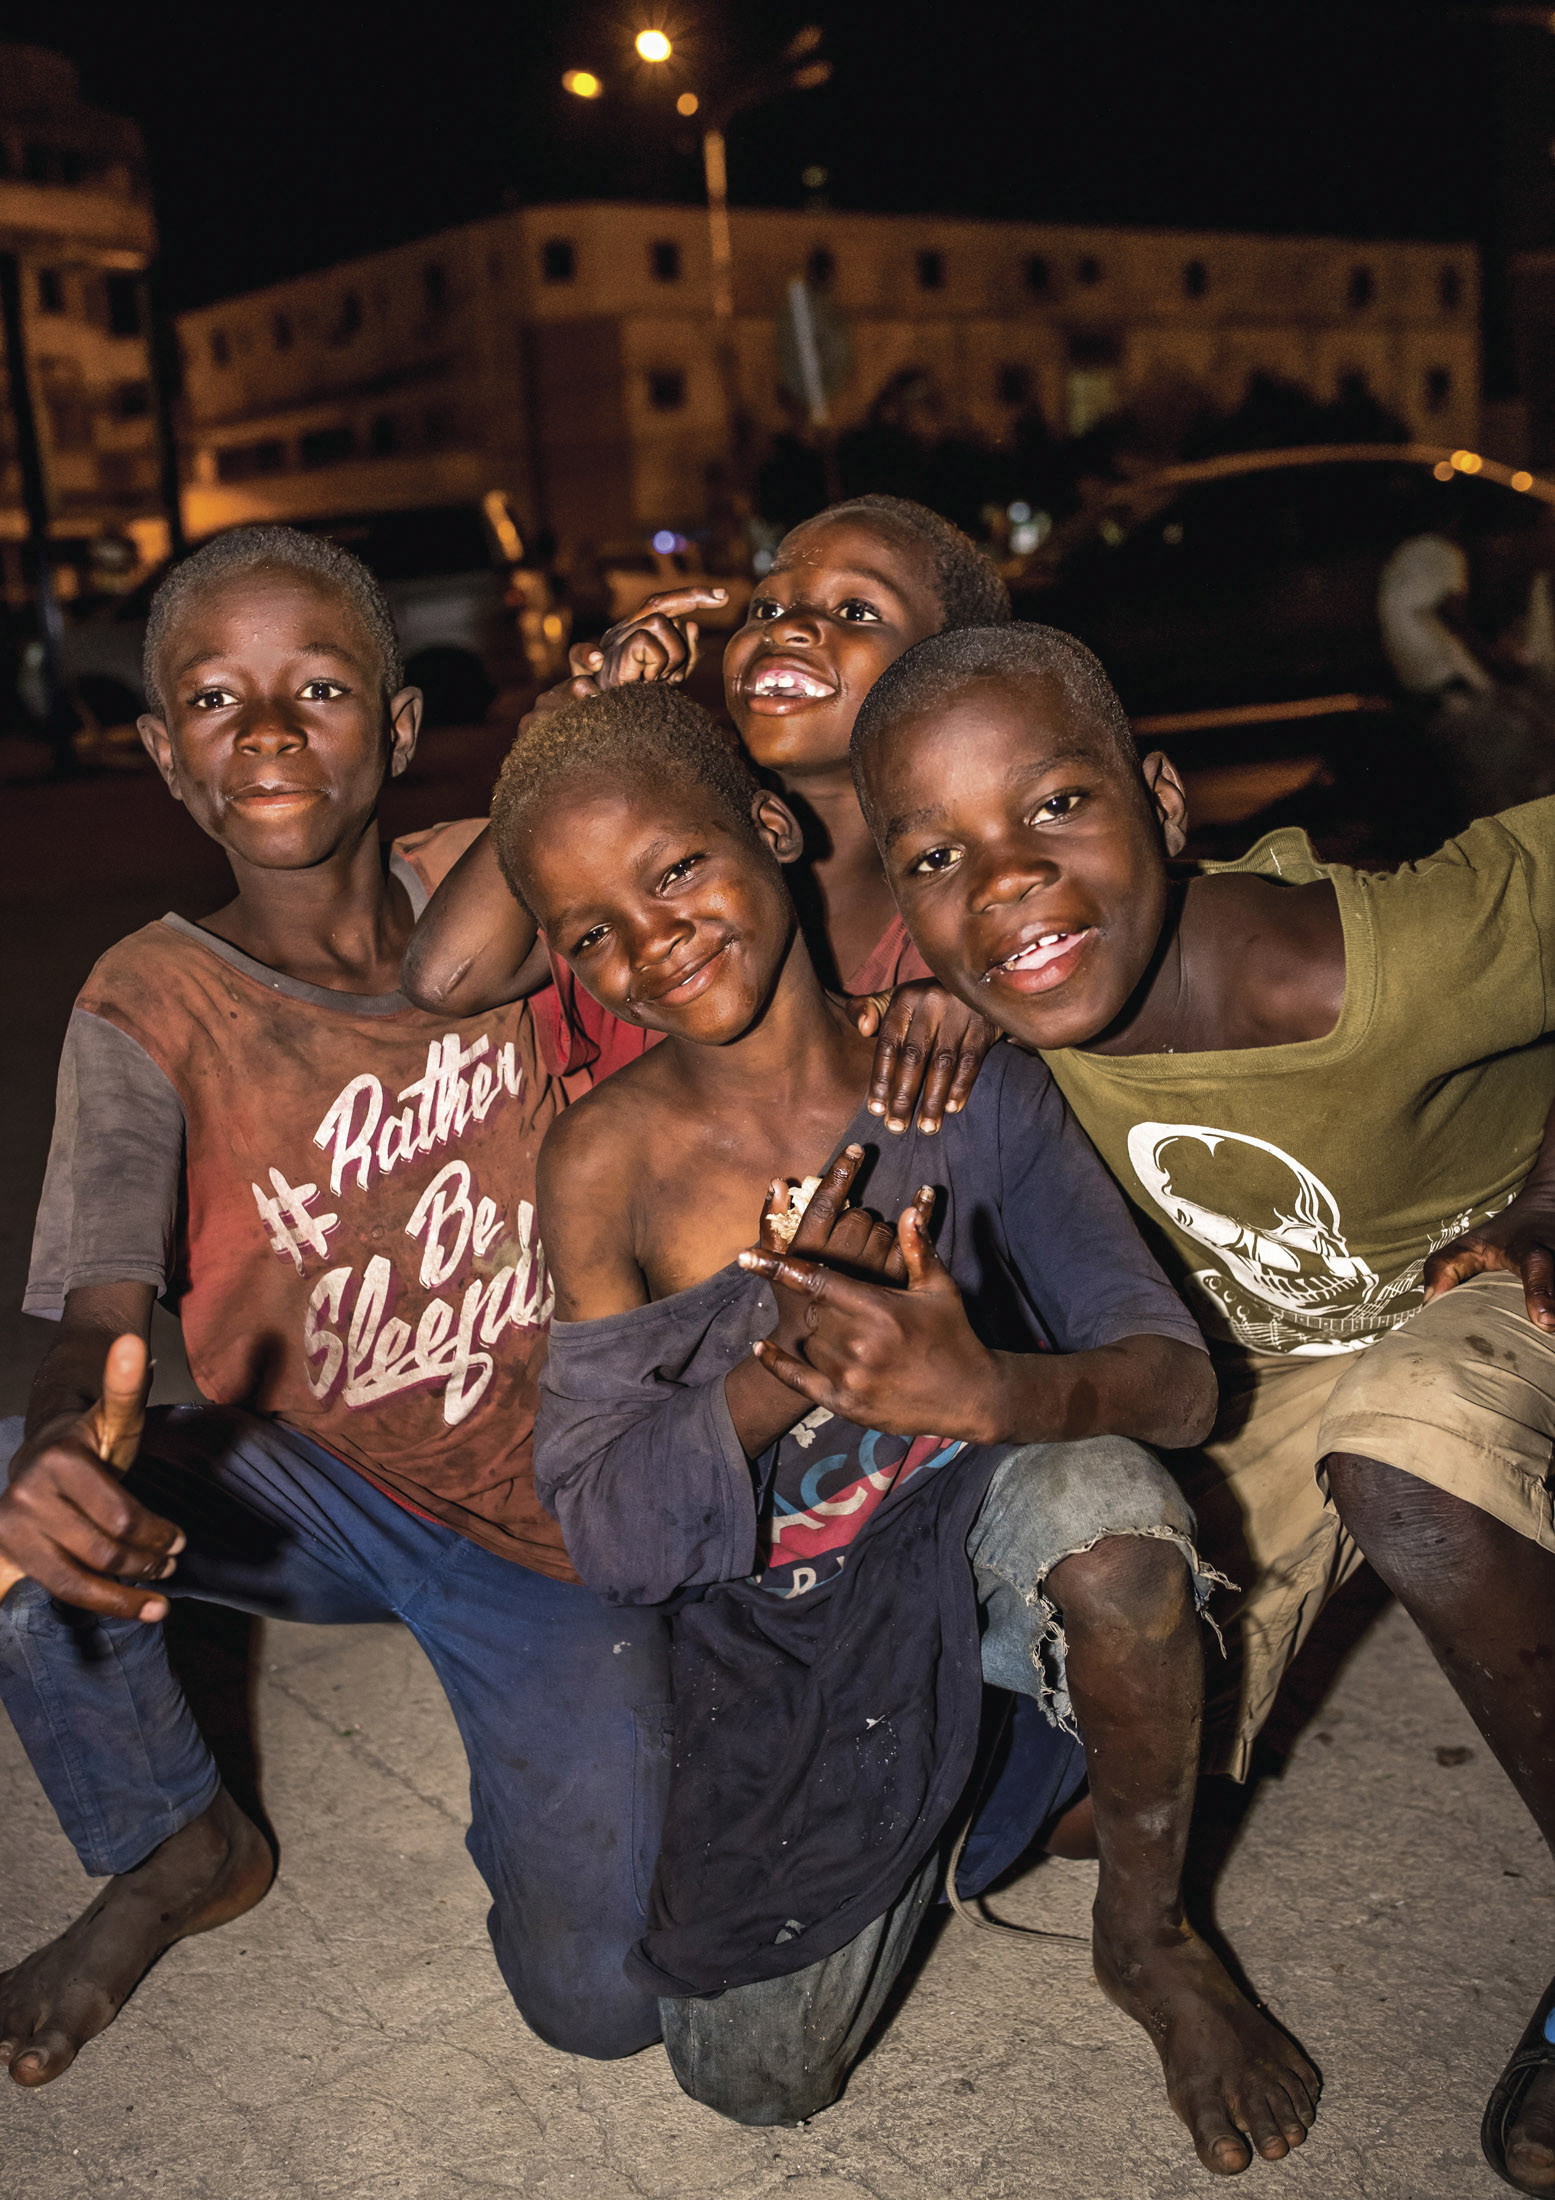 Vier fröhliche Jungen drängen sich nachts zusammen, lächeln und schauen in die Kamera. Einer hält Trommelstöcke, ein anderer zeigt seine Handflächen. Die Lichter der Stadt erhellen schwach den Hintergrund. © Fotografie Tomas Rodriguez